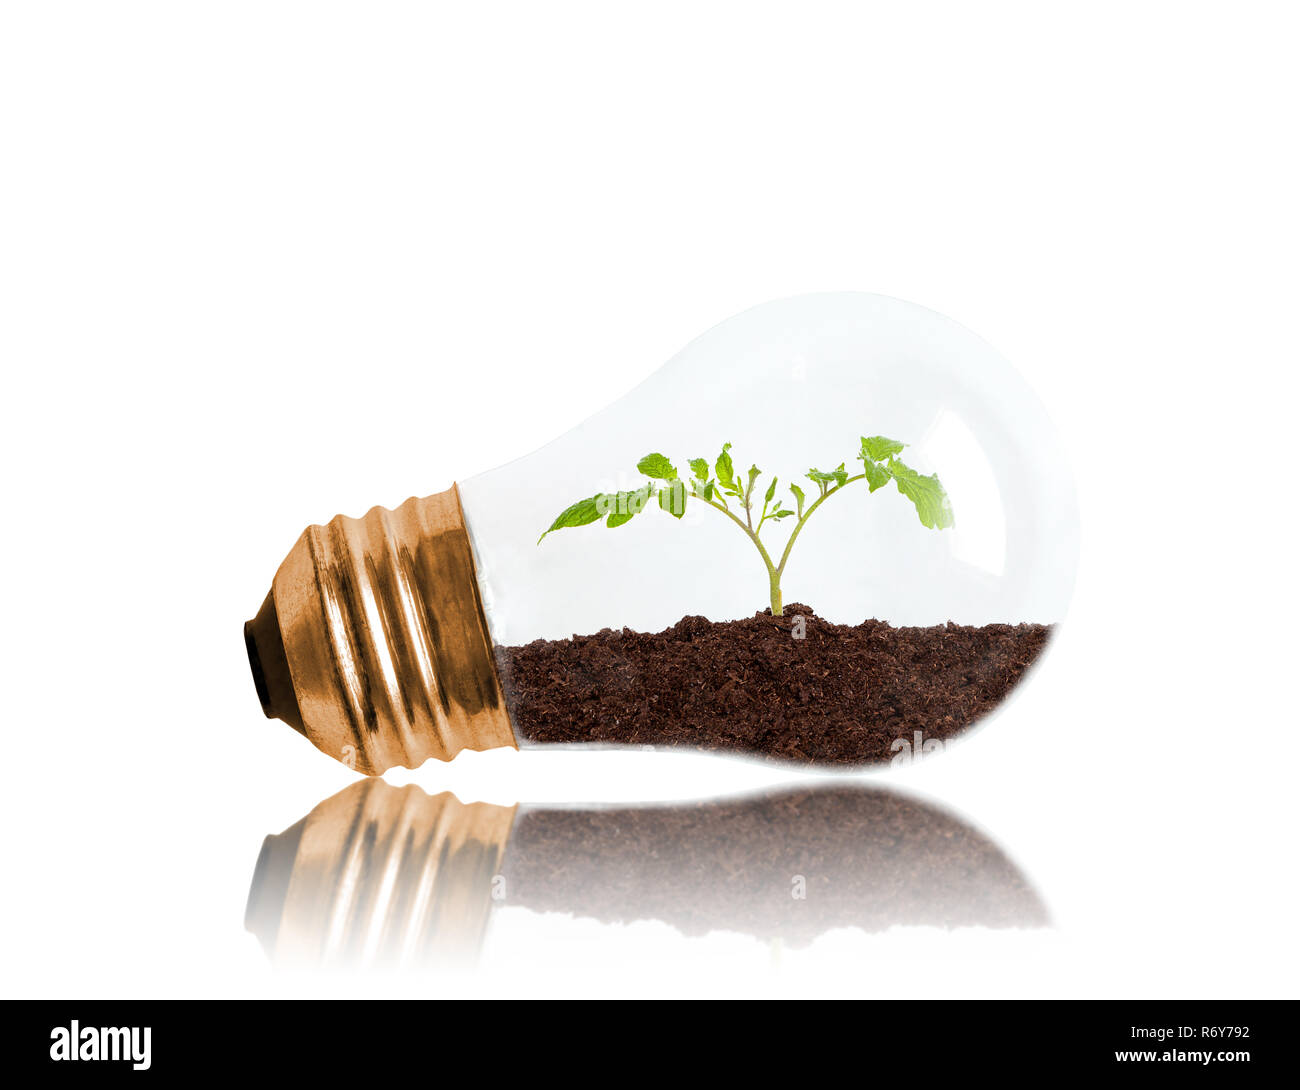 Jeunes plantules issues de sol inside Light bulb with copy space. Concept de nouvelle vie ou début, conservation de l'environnement, l'écologie ou vert m Banque D'Images